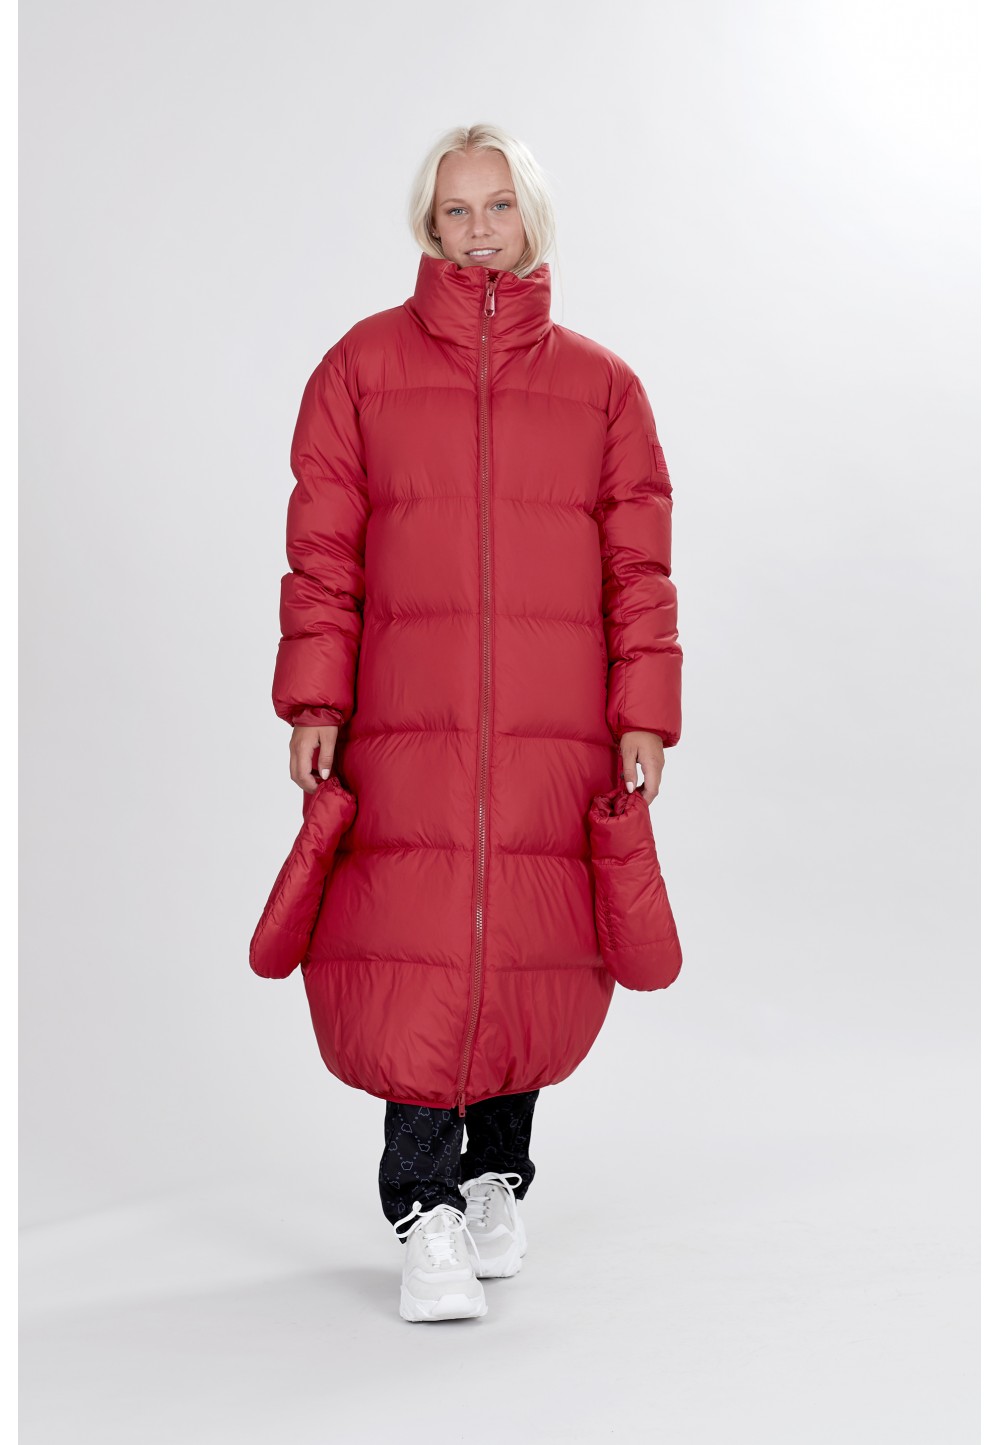 Широка червона куртка-пальто